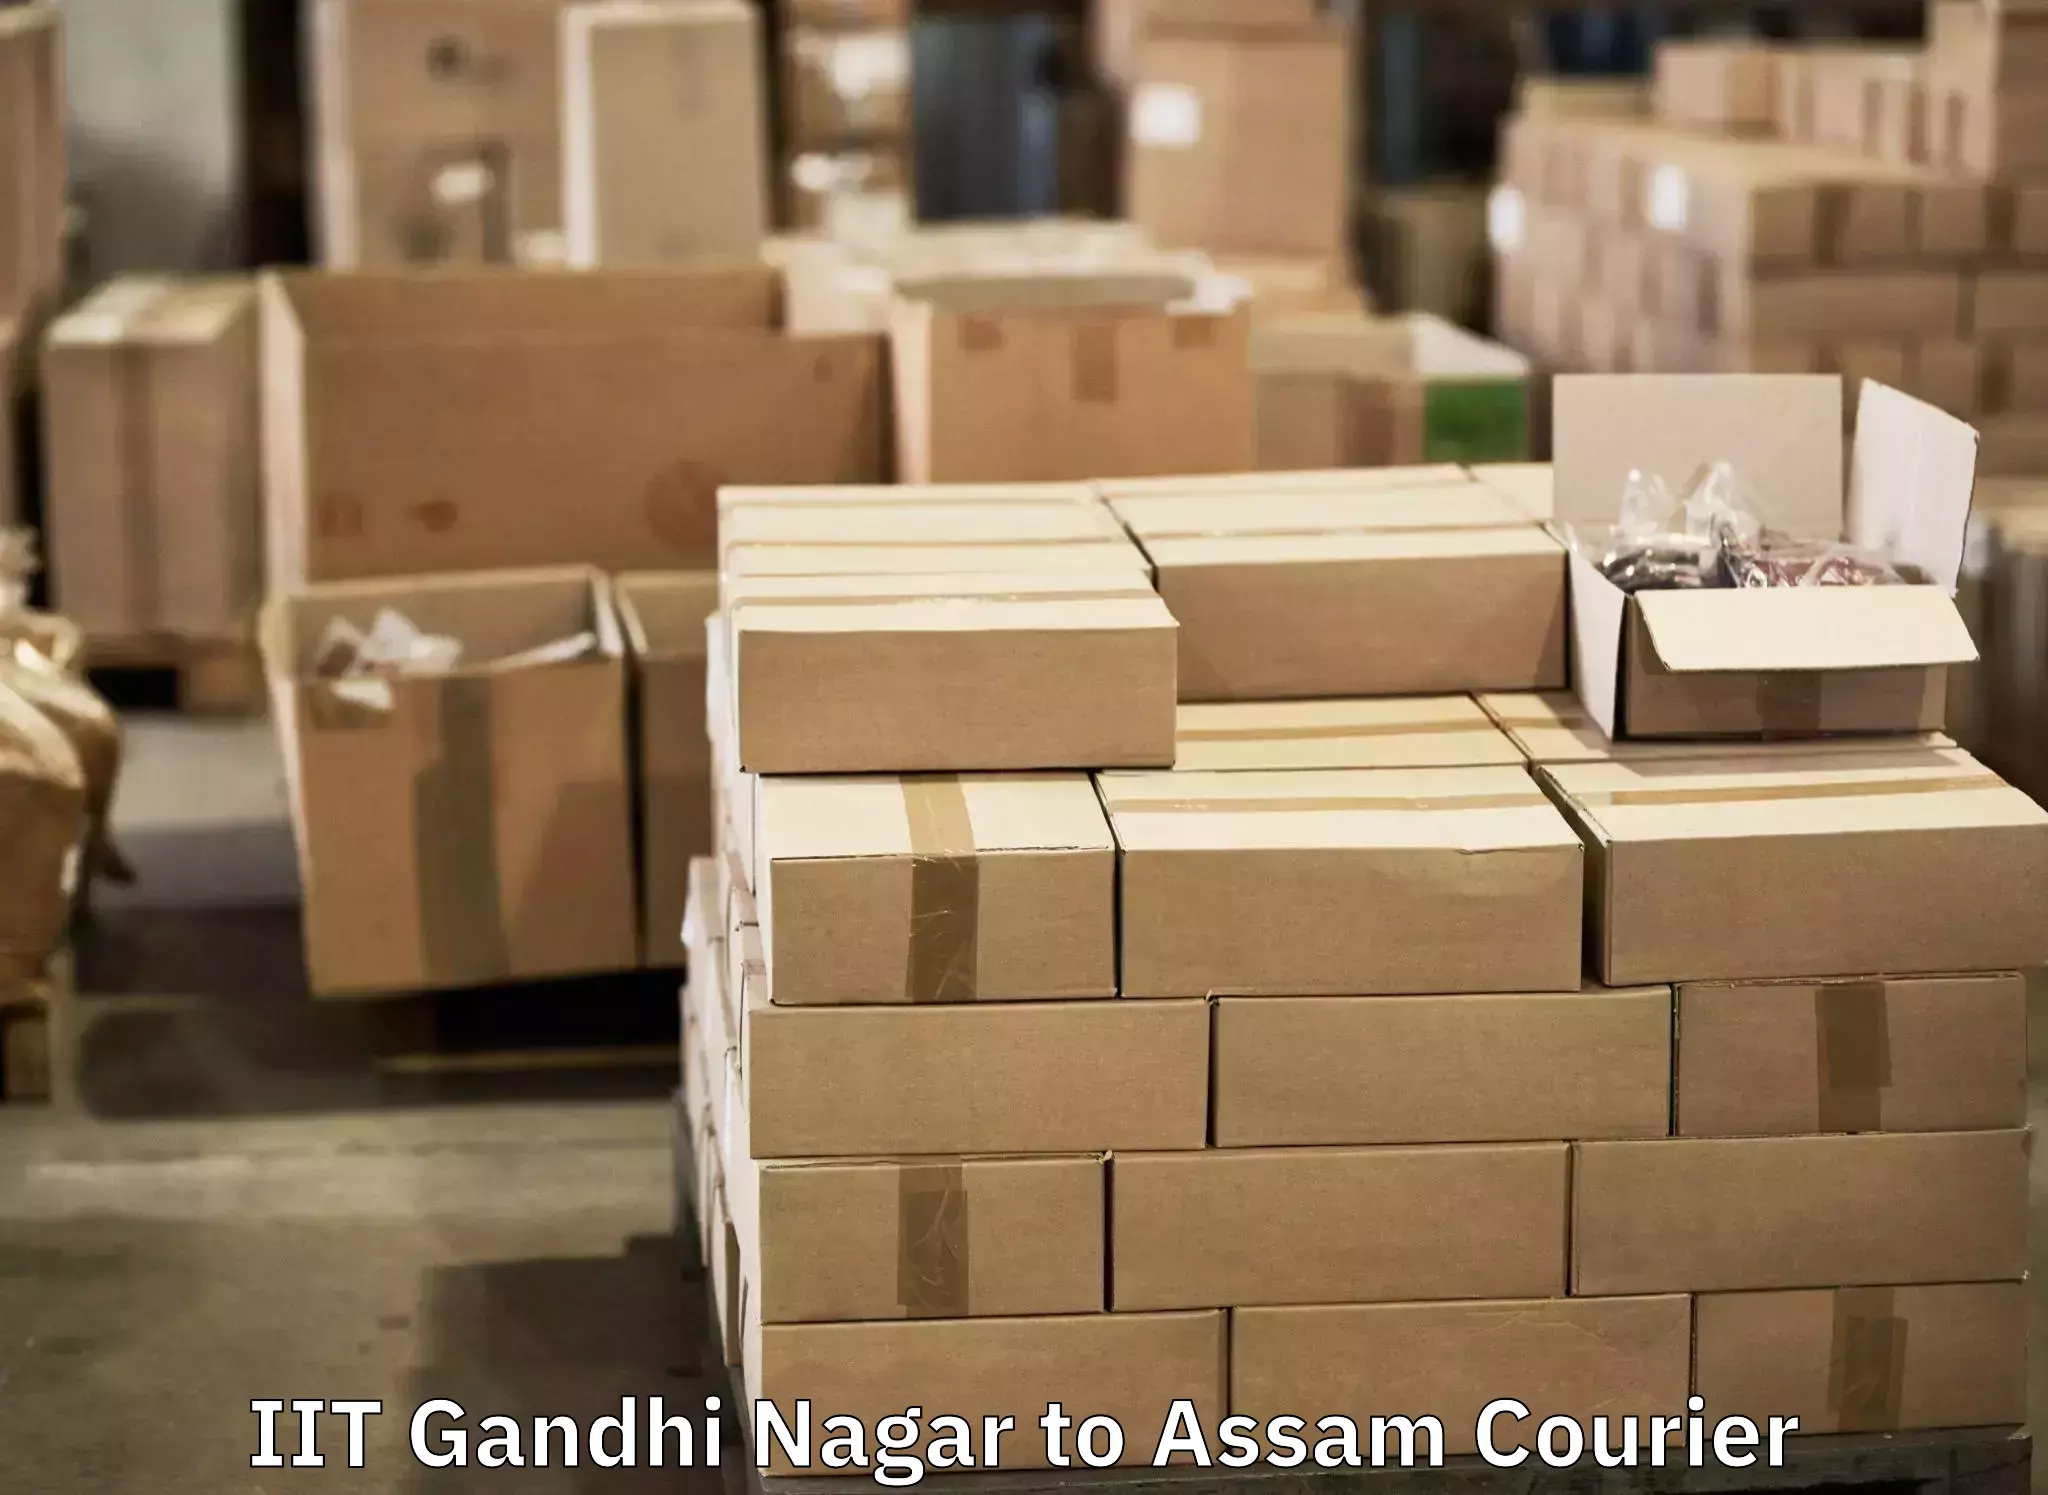 Baggage shipping quotes IIT Gandhi Nagar to Kokrajhar